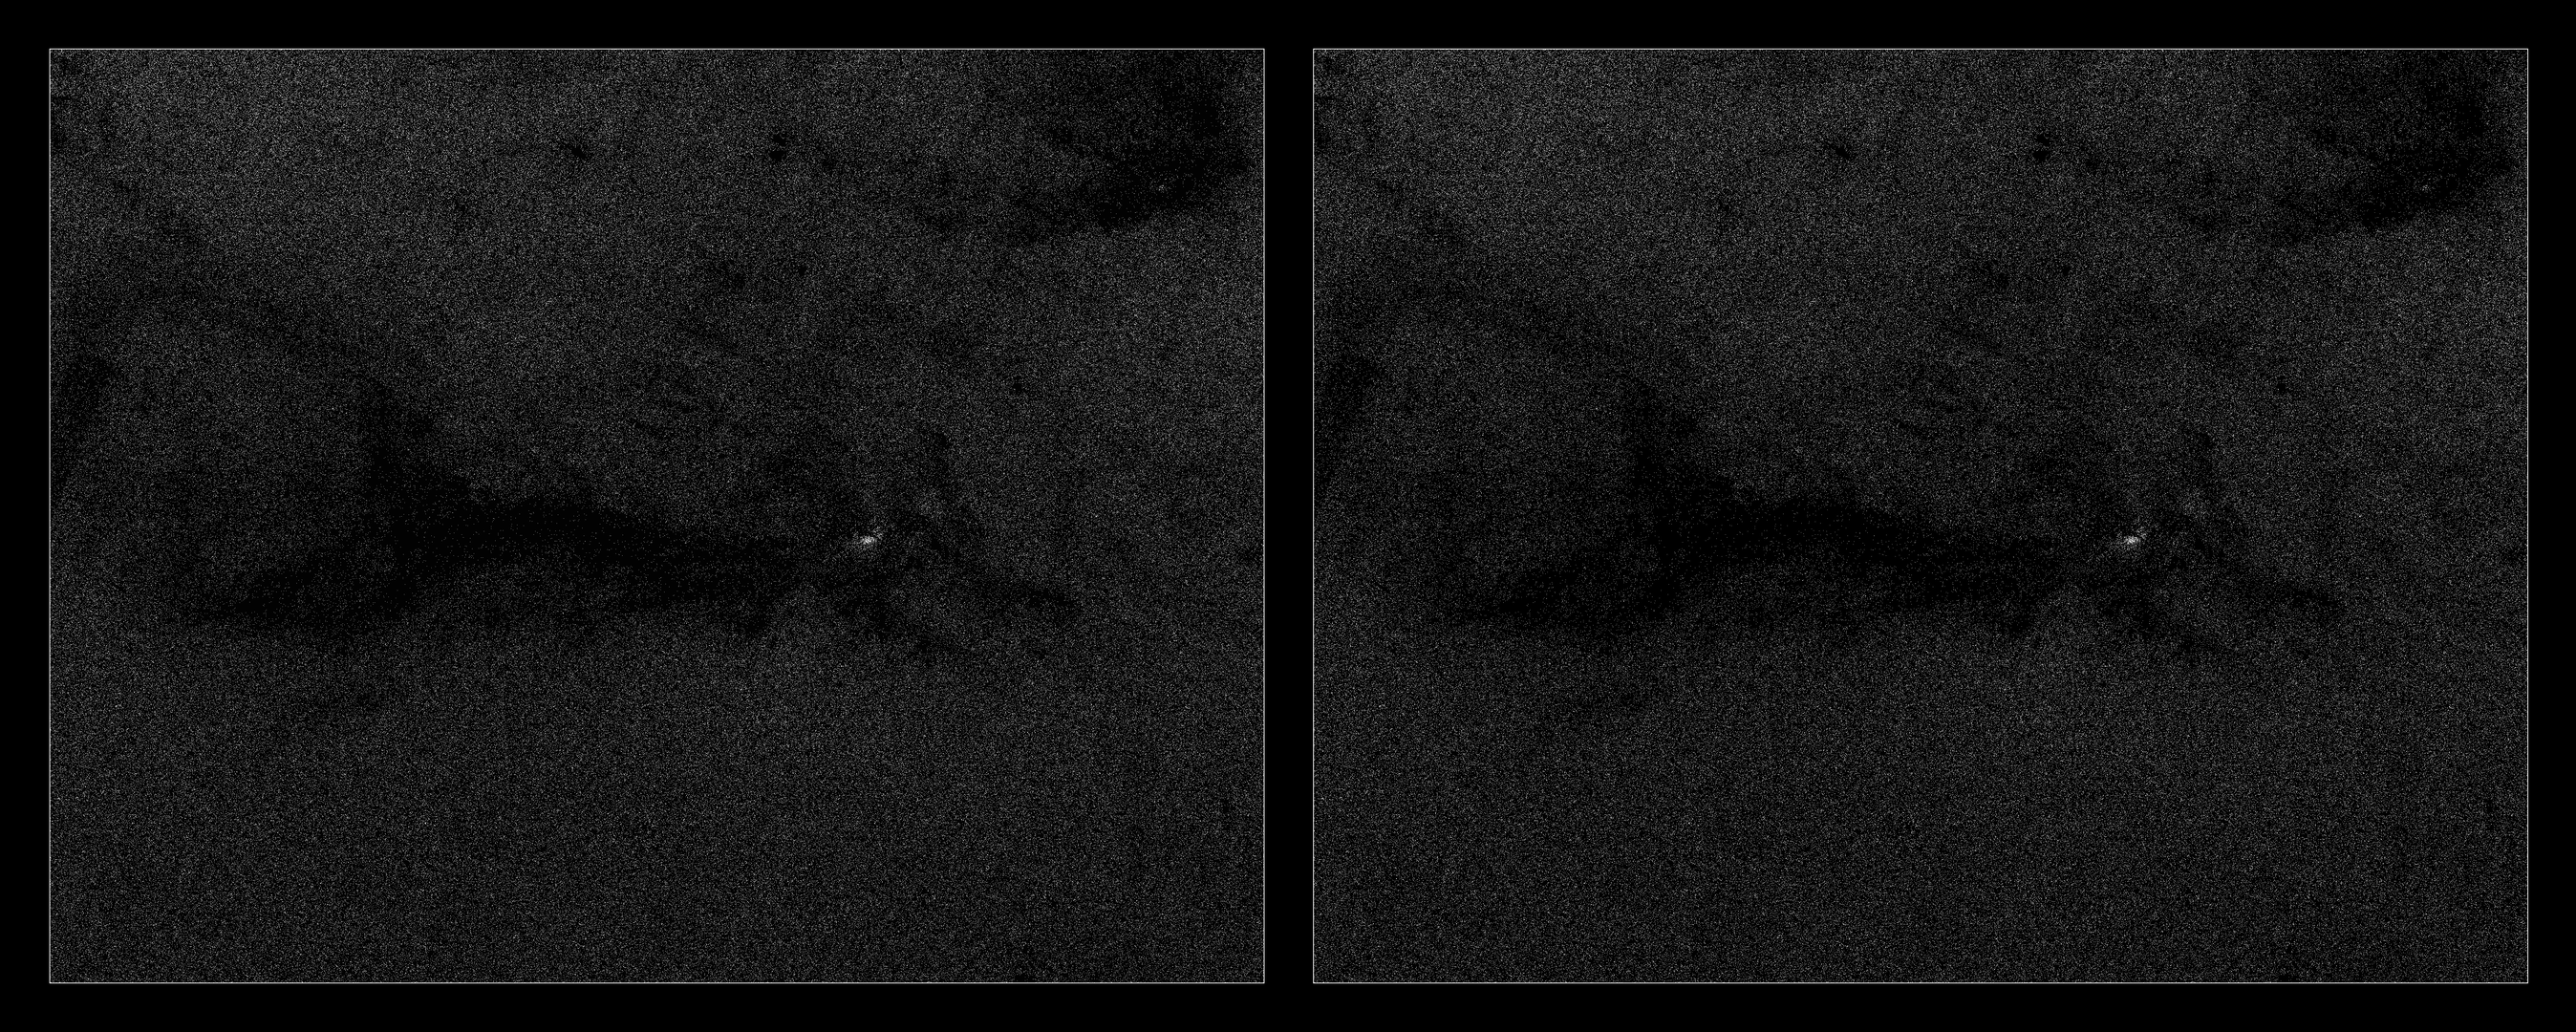 Vista de Gaia de una nebulosa oscura en Orión